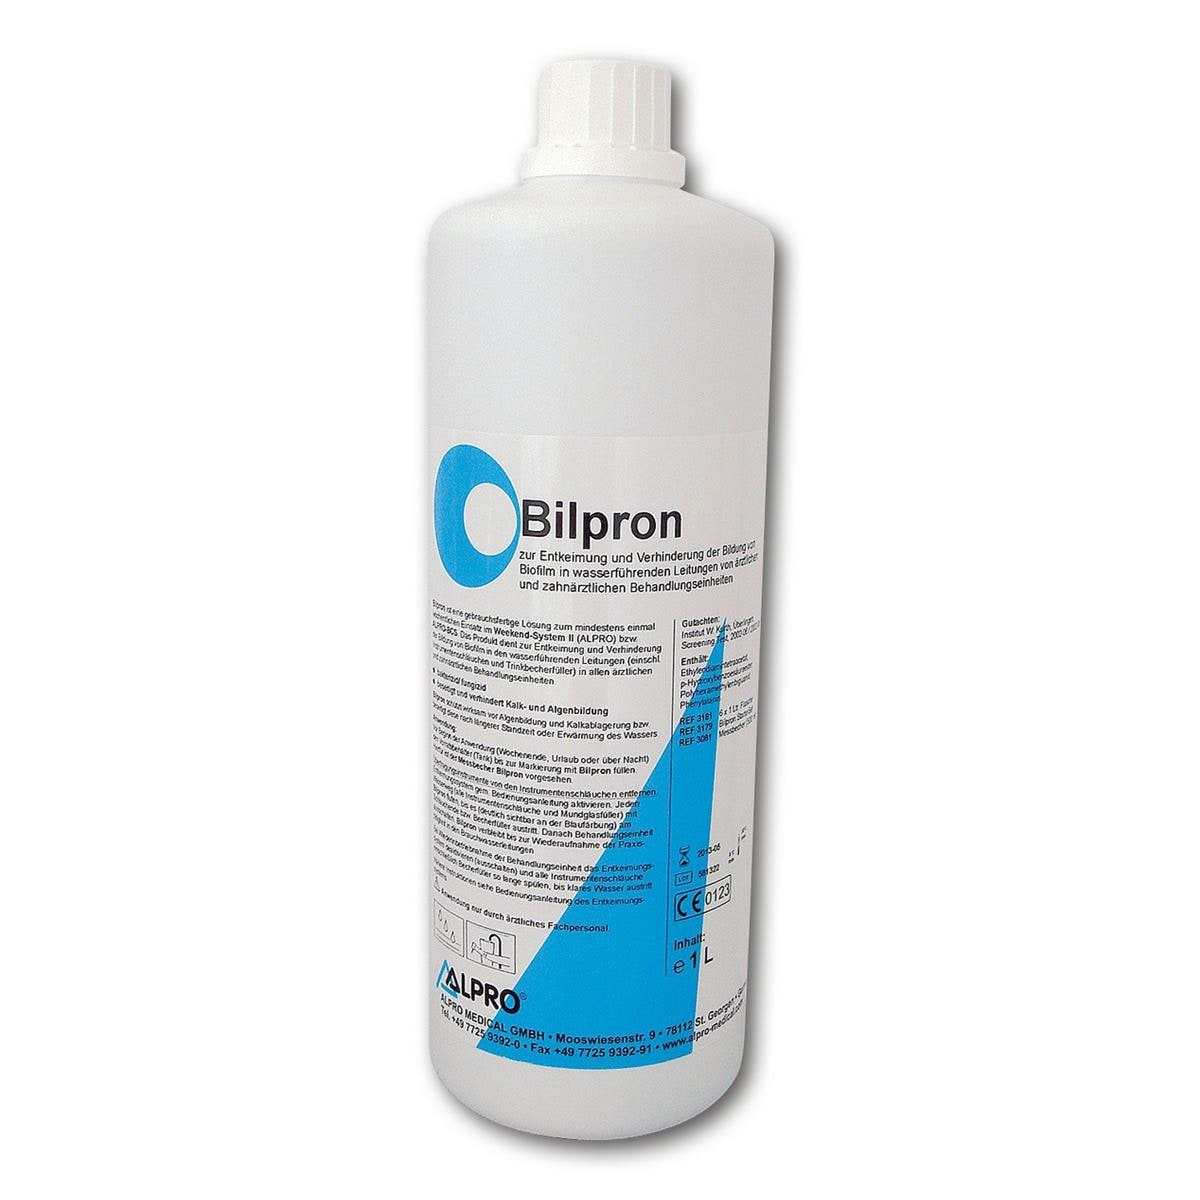 Bilpron - 6 x 1 litre pour D1 dispenser